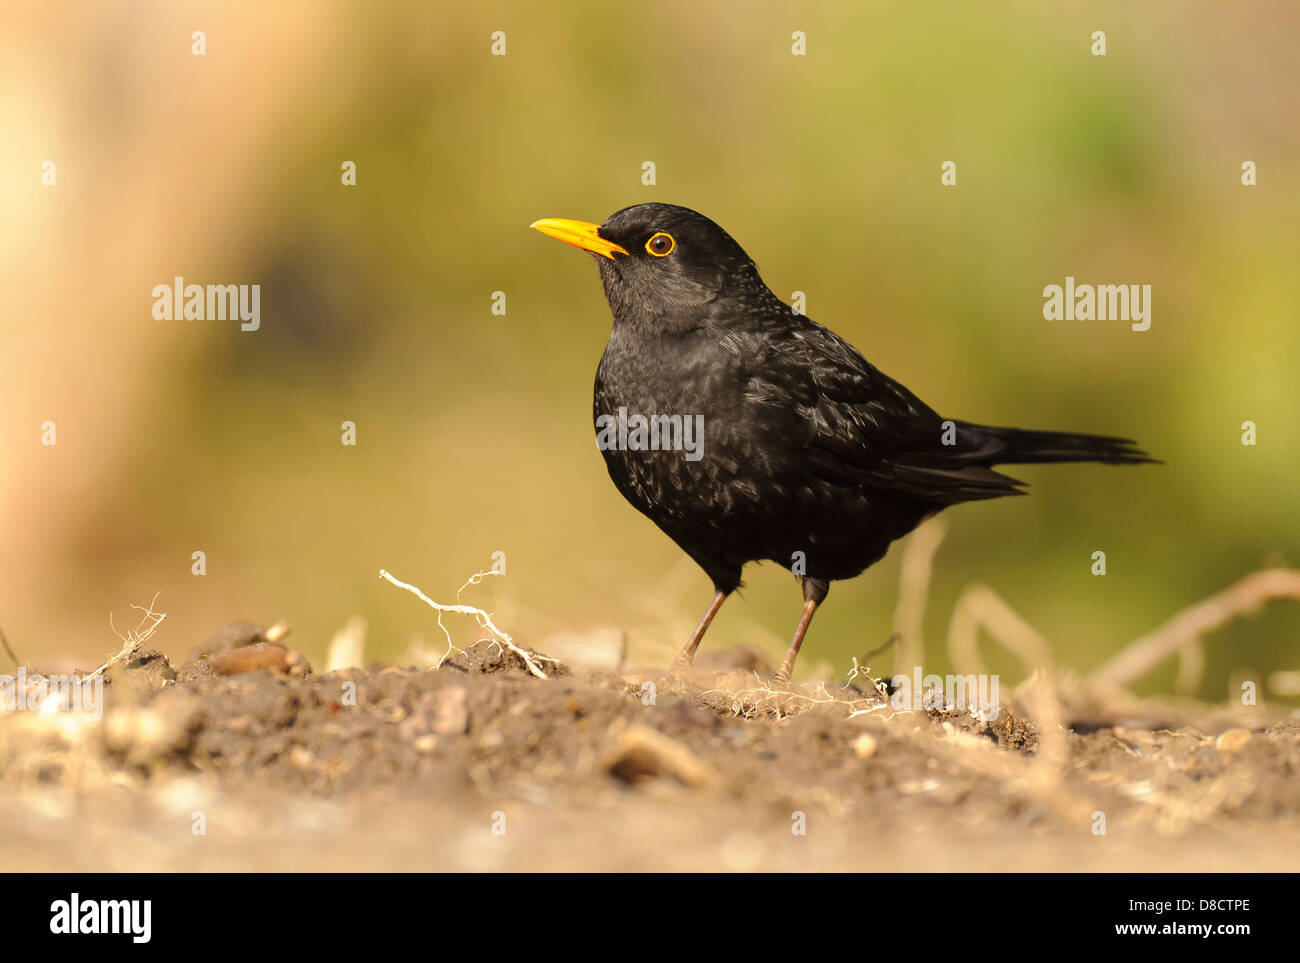 common blackbird, turdus merula Stock Photo